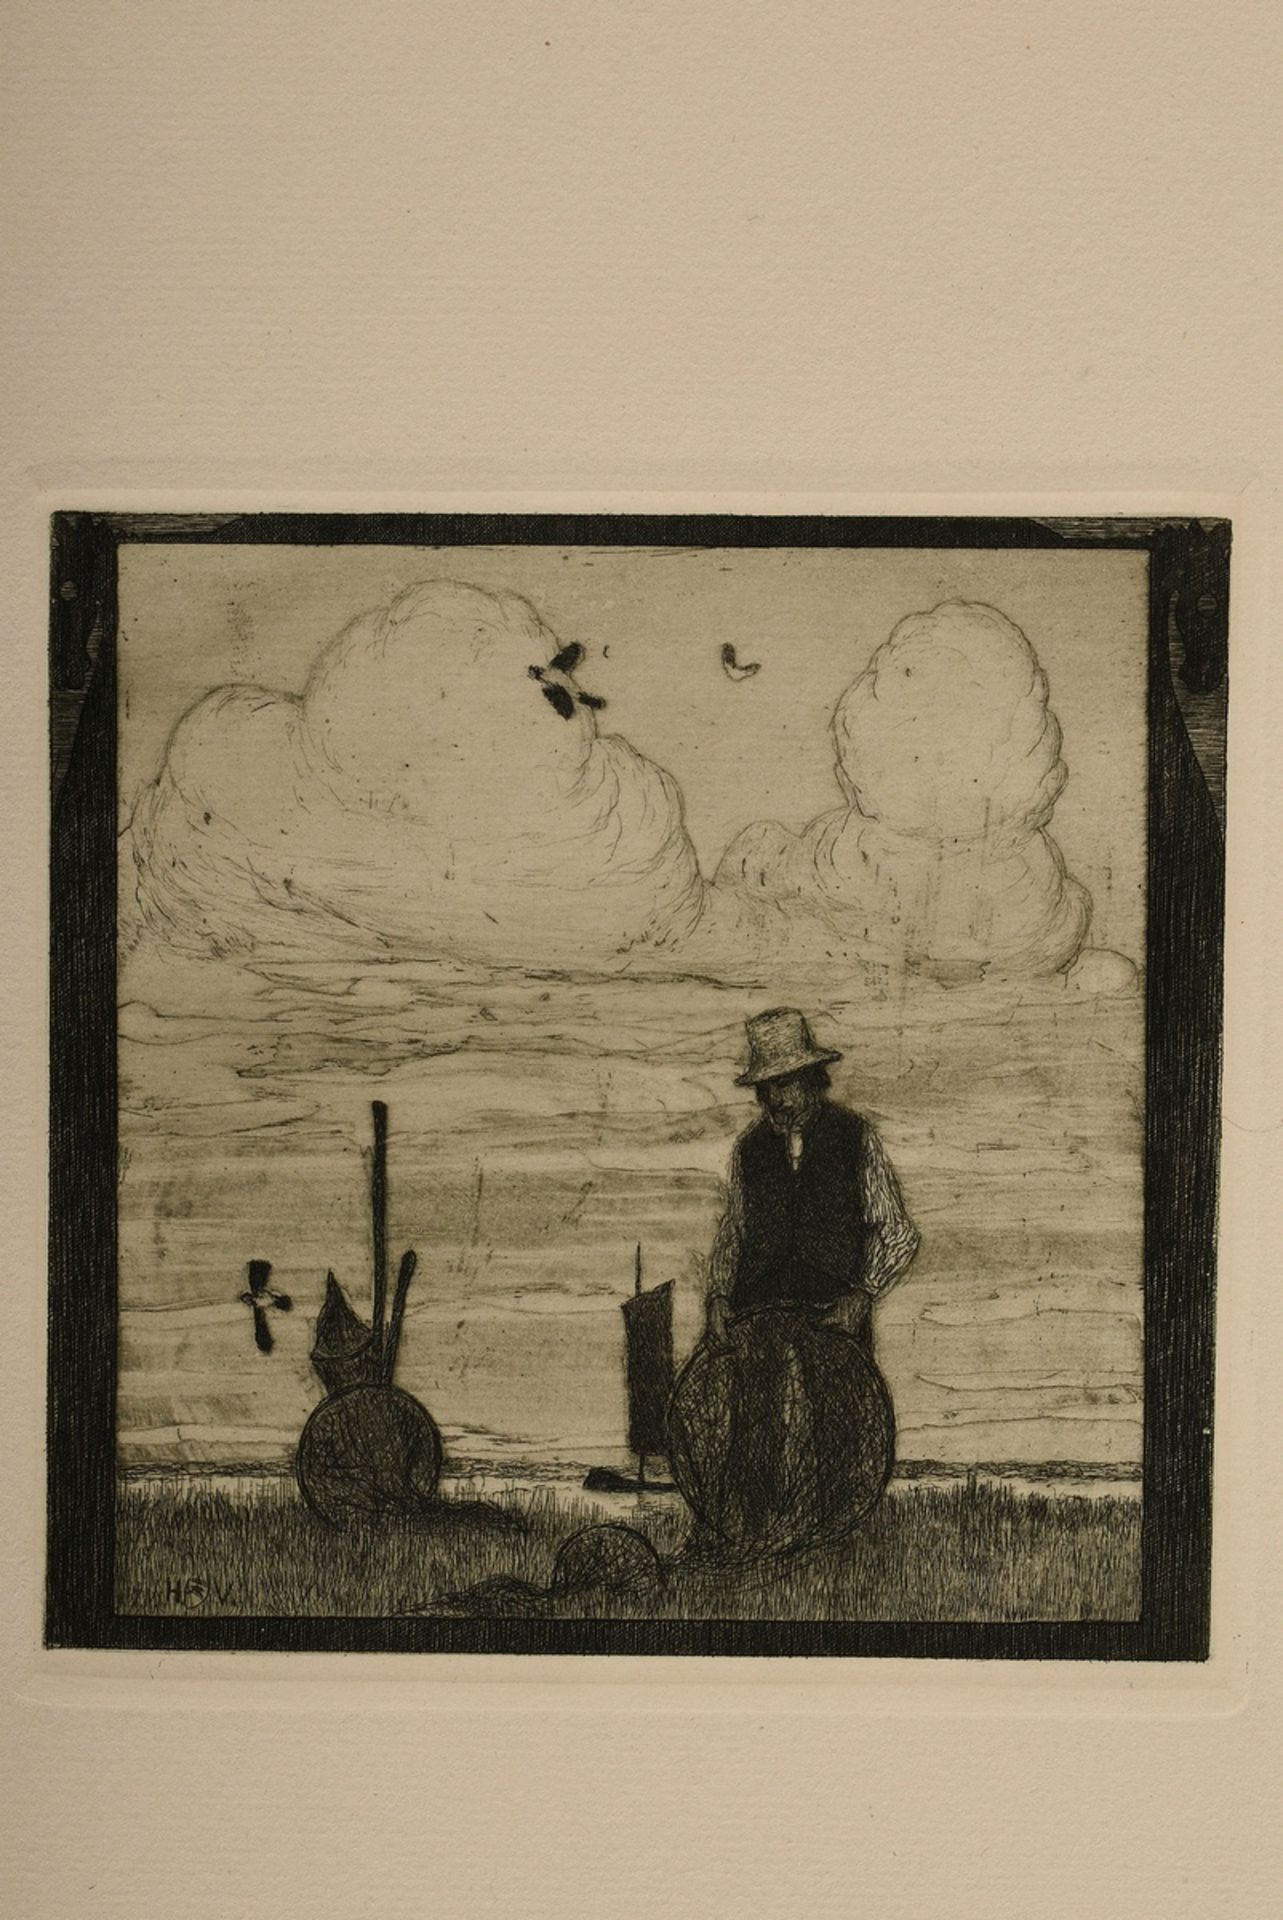 Vogeler, Heinrich (1872-1942) "An den Frühling" 1899/1901, portfolio with 10 etchings and prelimina - Image 13 of 25